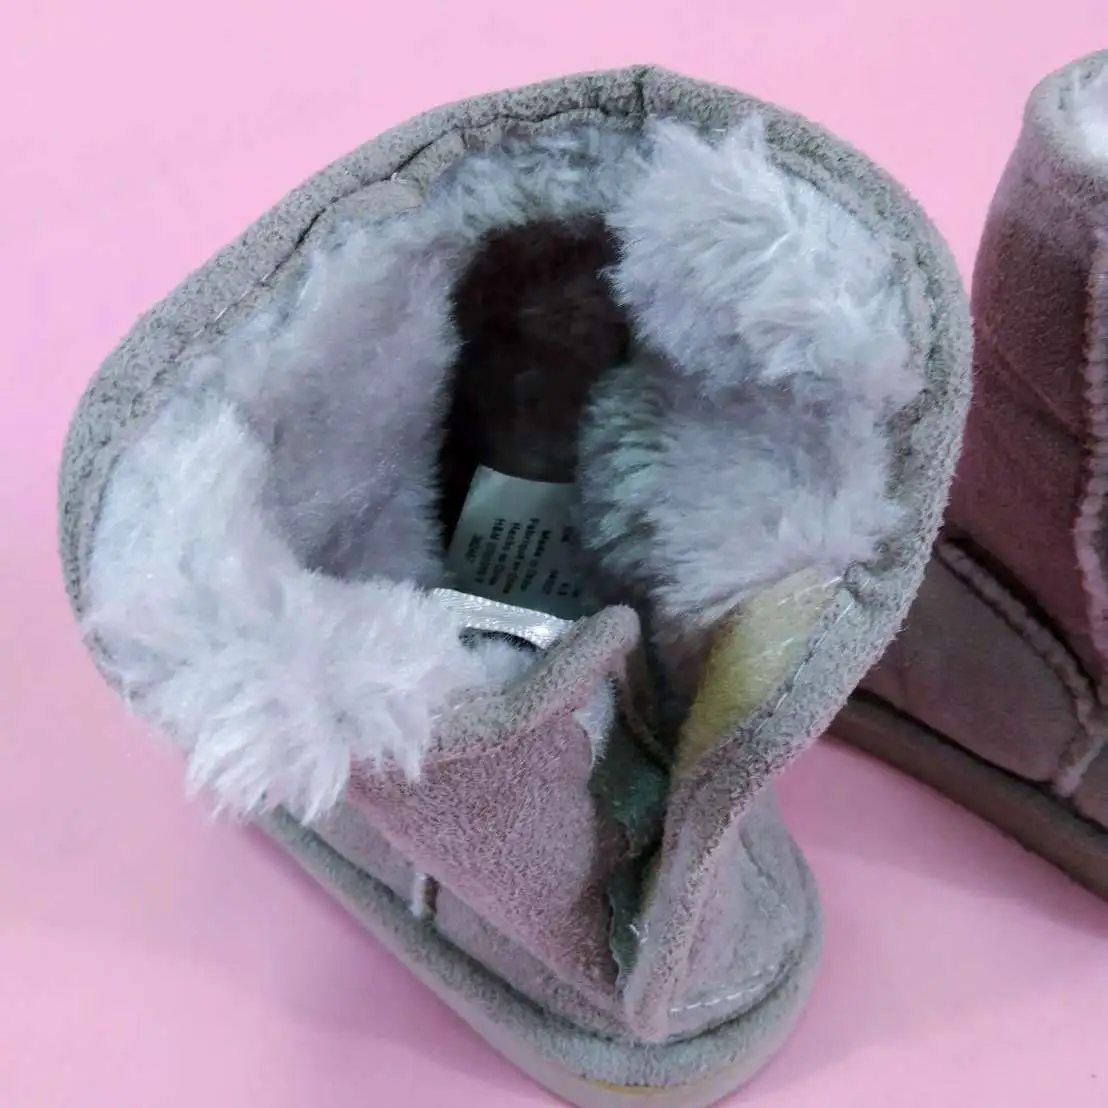 H&M รองเท้าบูทกันหนาวสีเทาไซส์ 6.5 ไม่เคยใส่